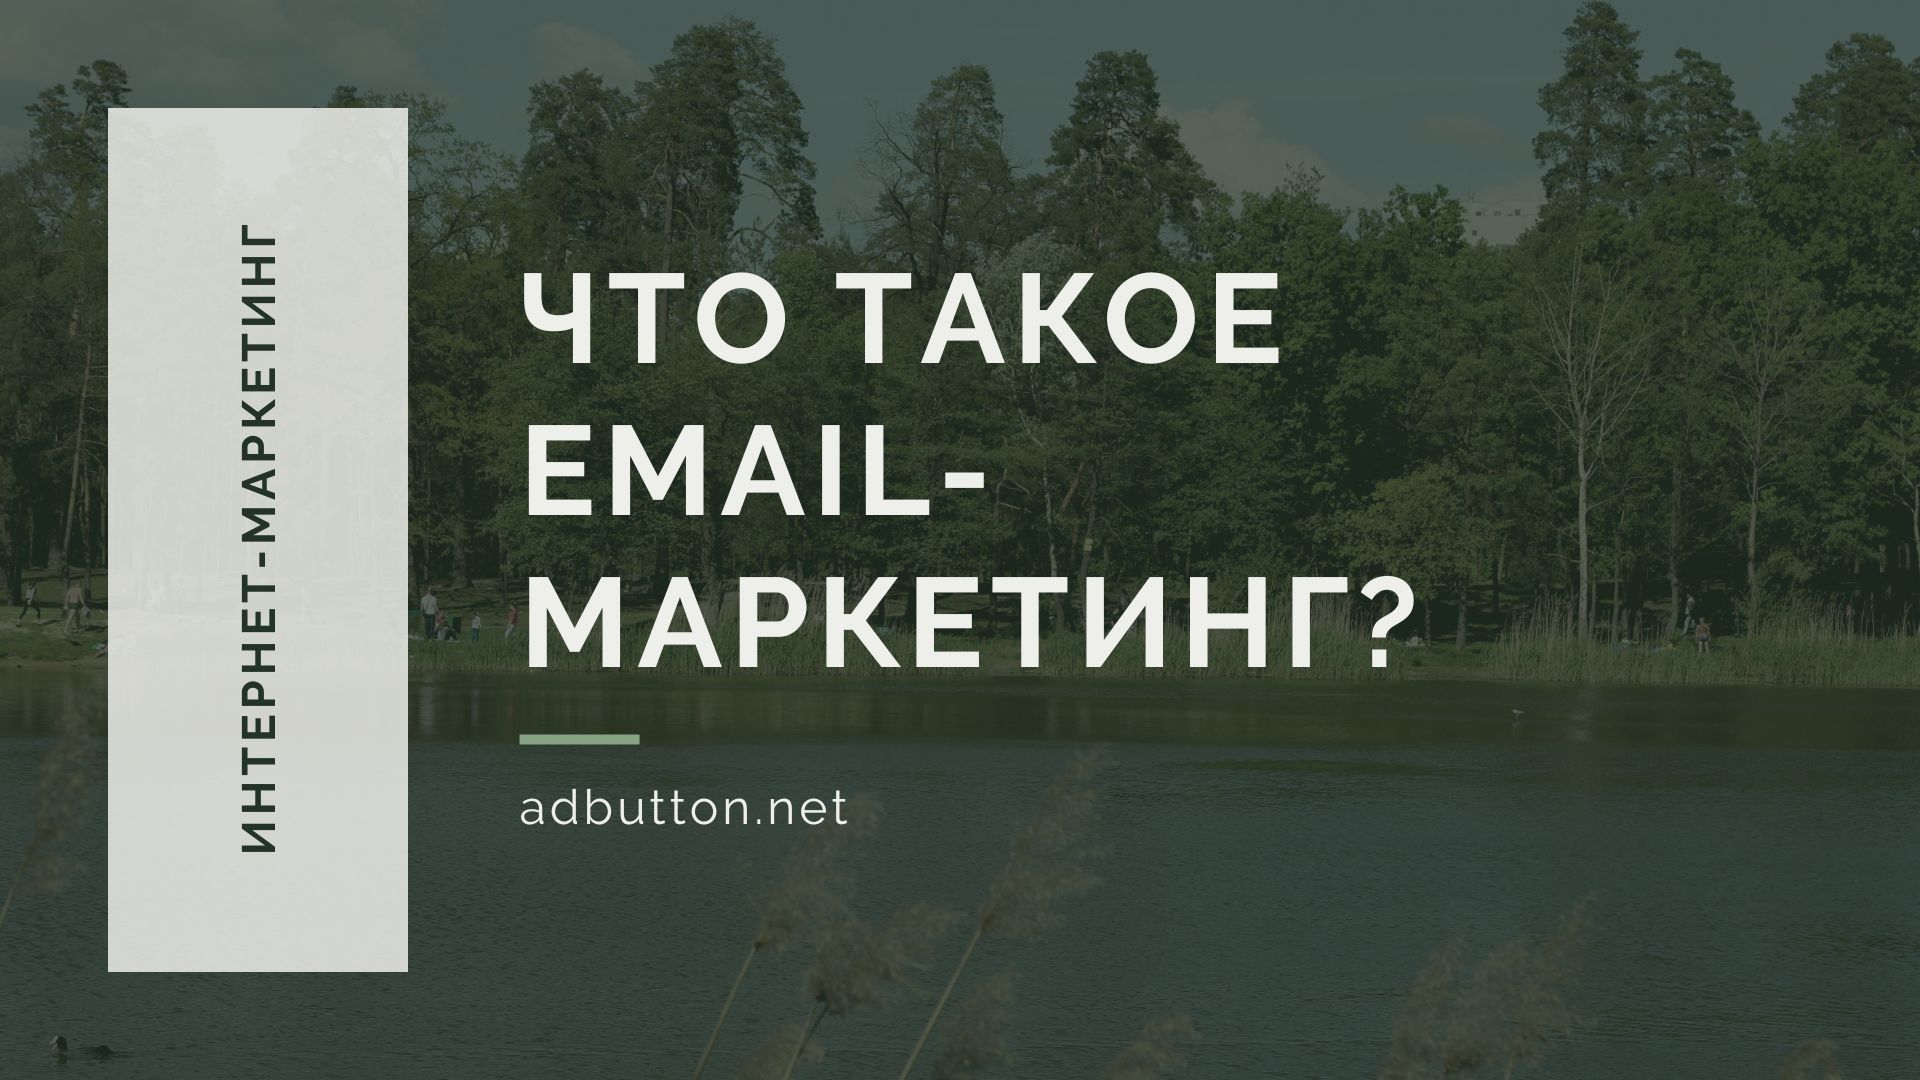 Email-маркетинг — создание и ведение почтовых рассылок с нуля